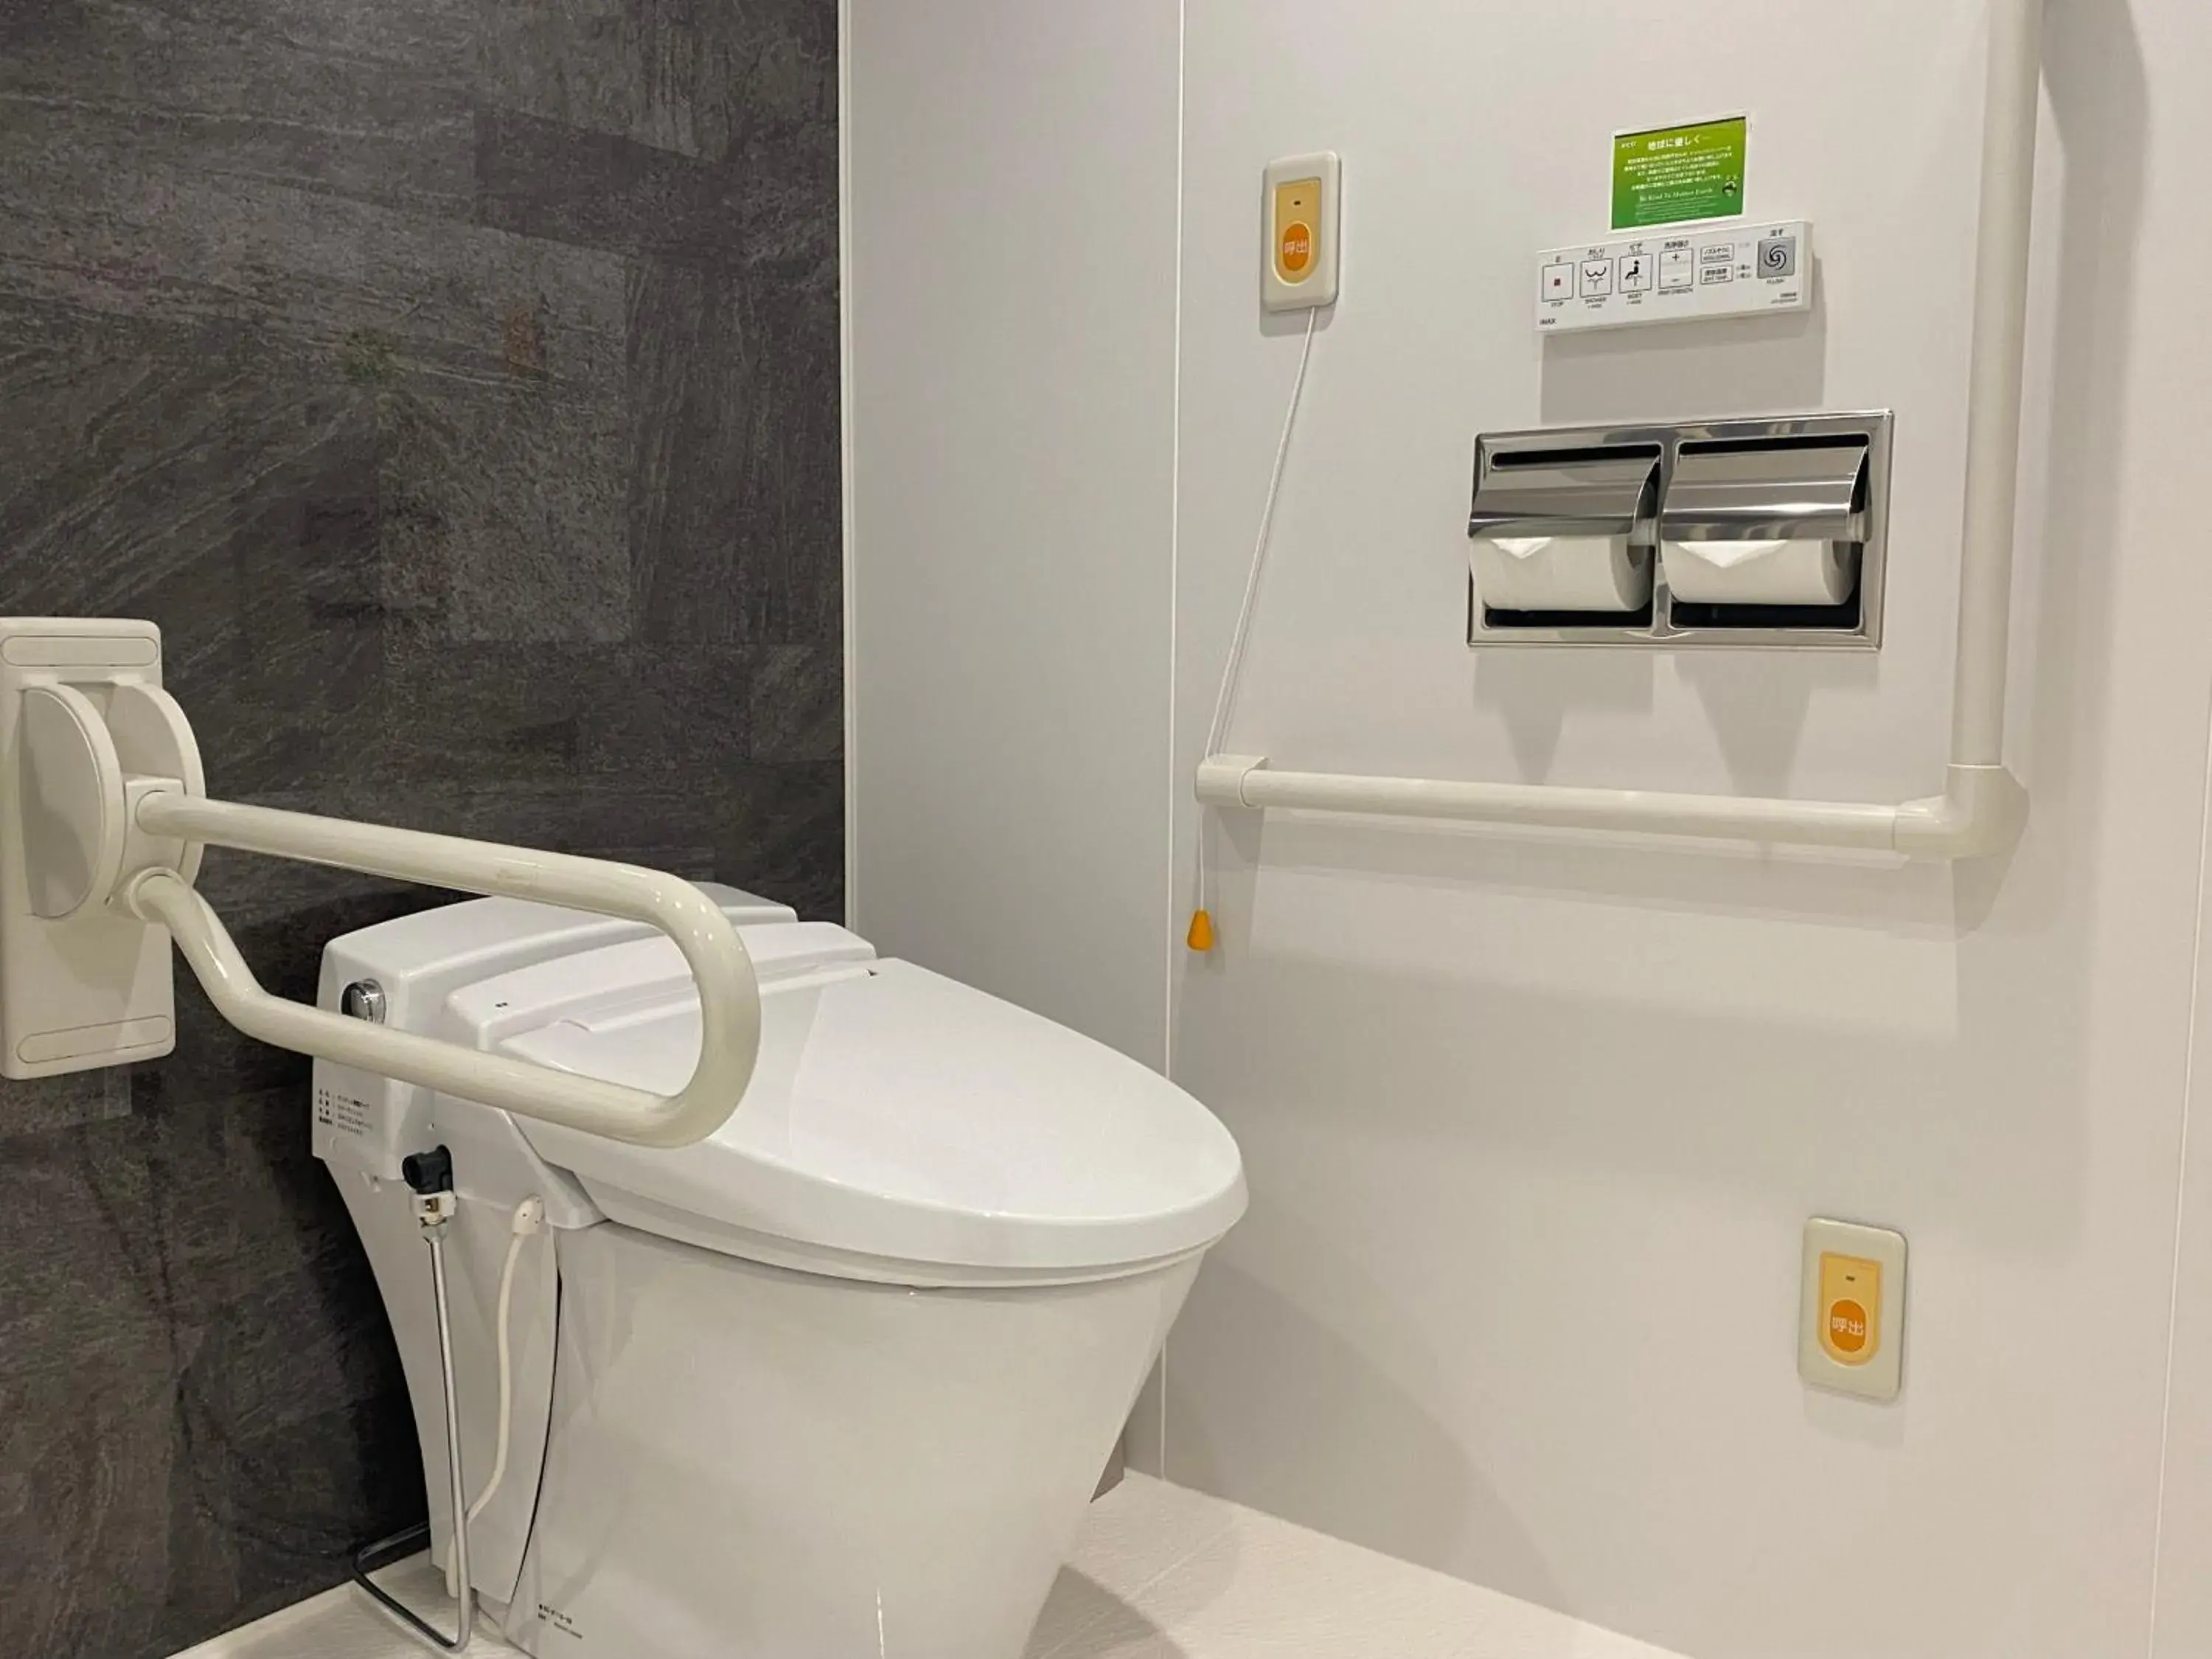 Toilet, Bathroom in Watermark Hotel Kyoto HIS Hotel Group